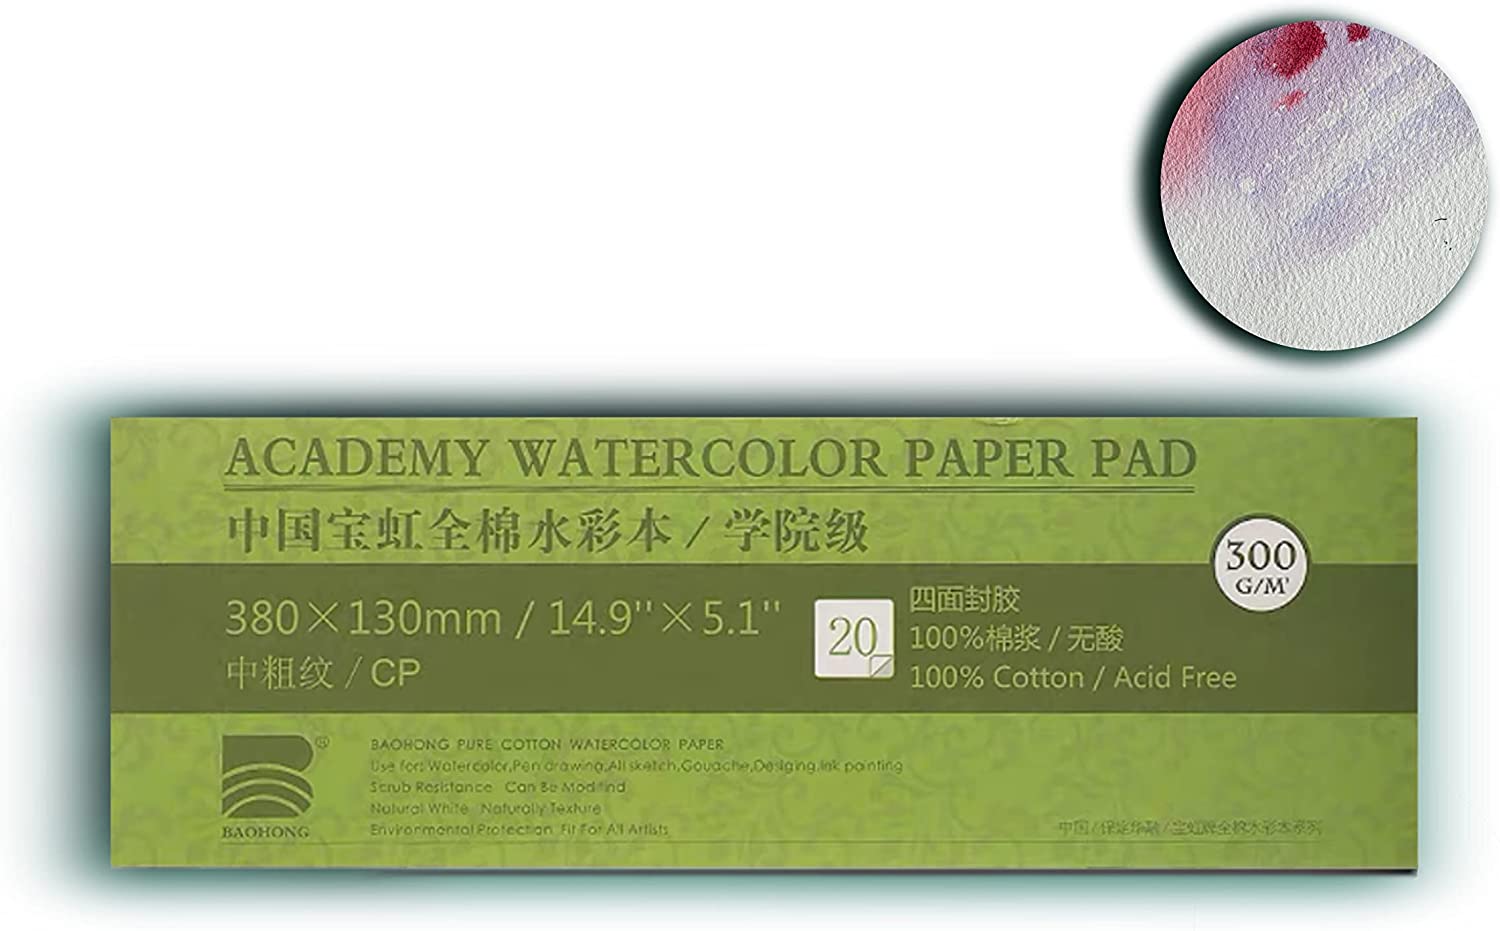 Baohong Academy Grade Watercolor Block, 100% Cotton, Acid-free, 140lb/300gsm, Cold Press Textured, 20 Sheets per Block (2 of Cold Press 15x10